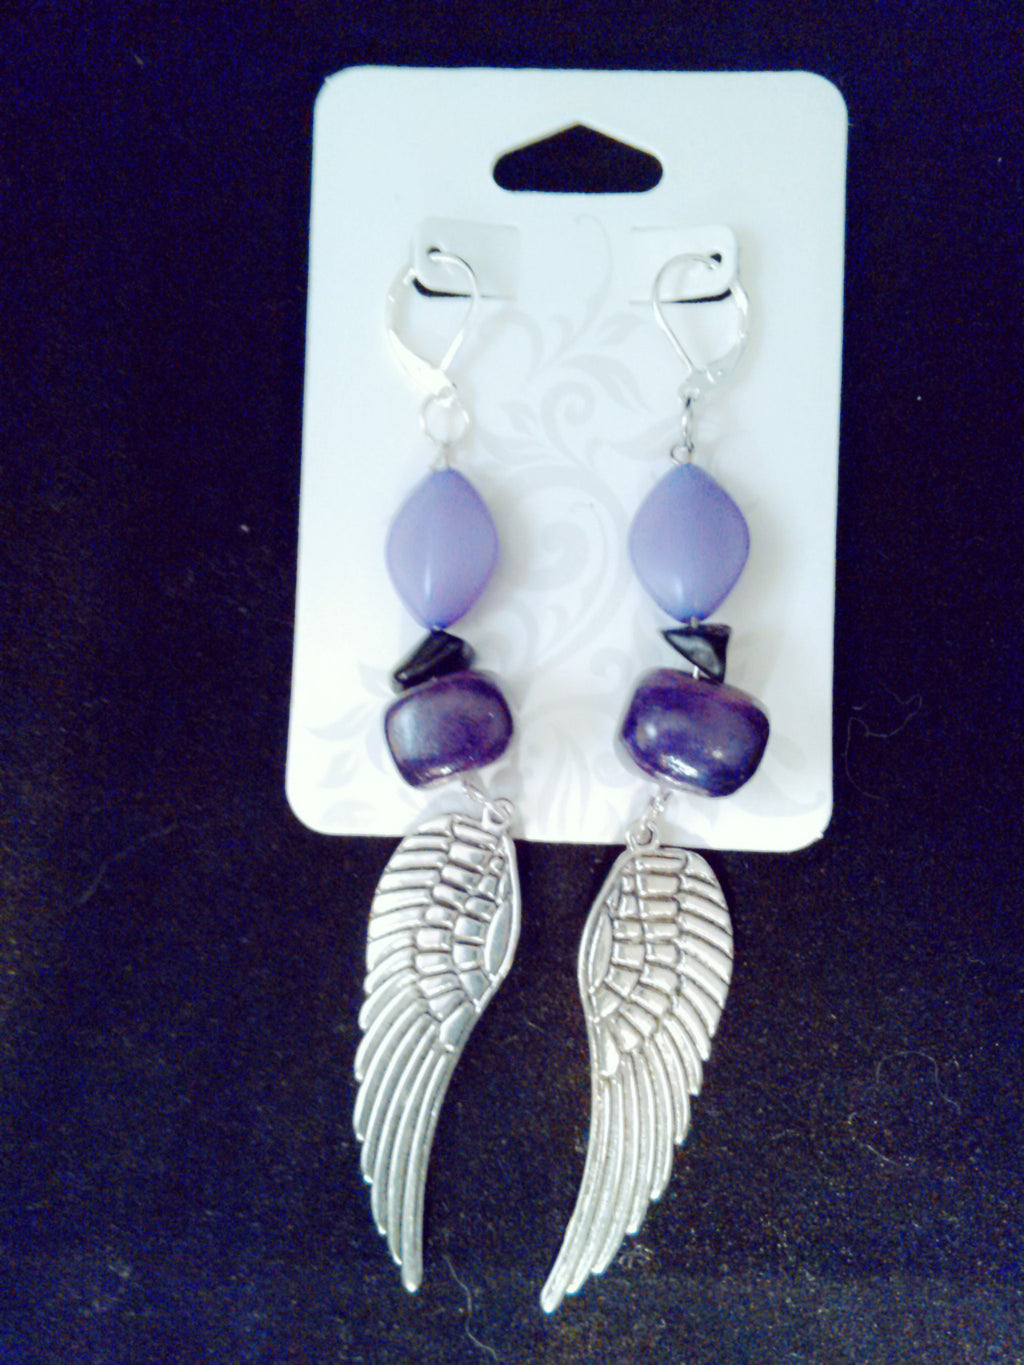 Purple angel wings earrings with black tourmaline